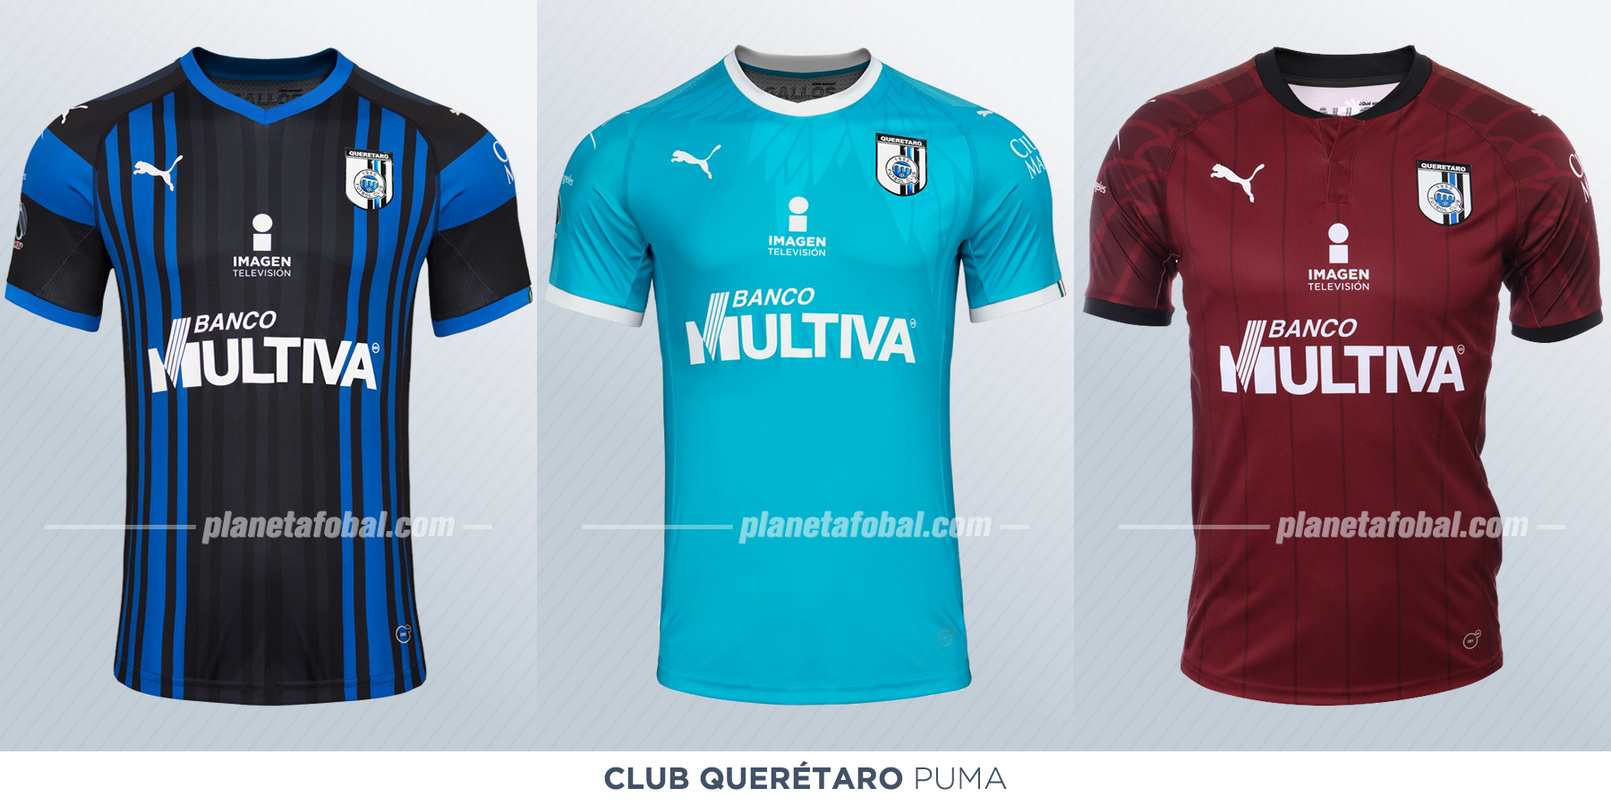 Camisetas de la Liga MX 2018/19